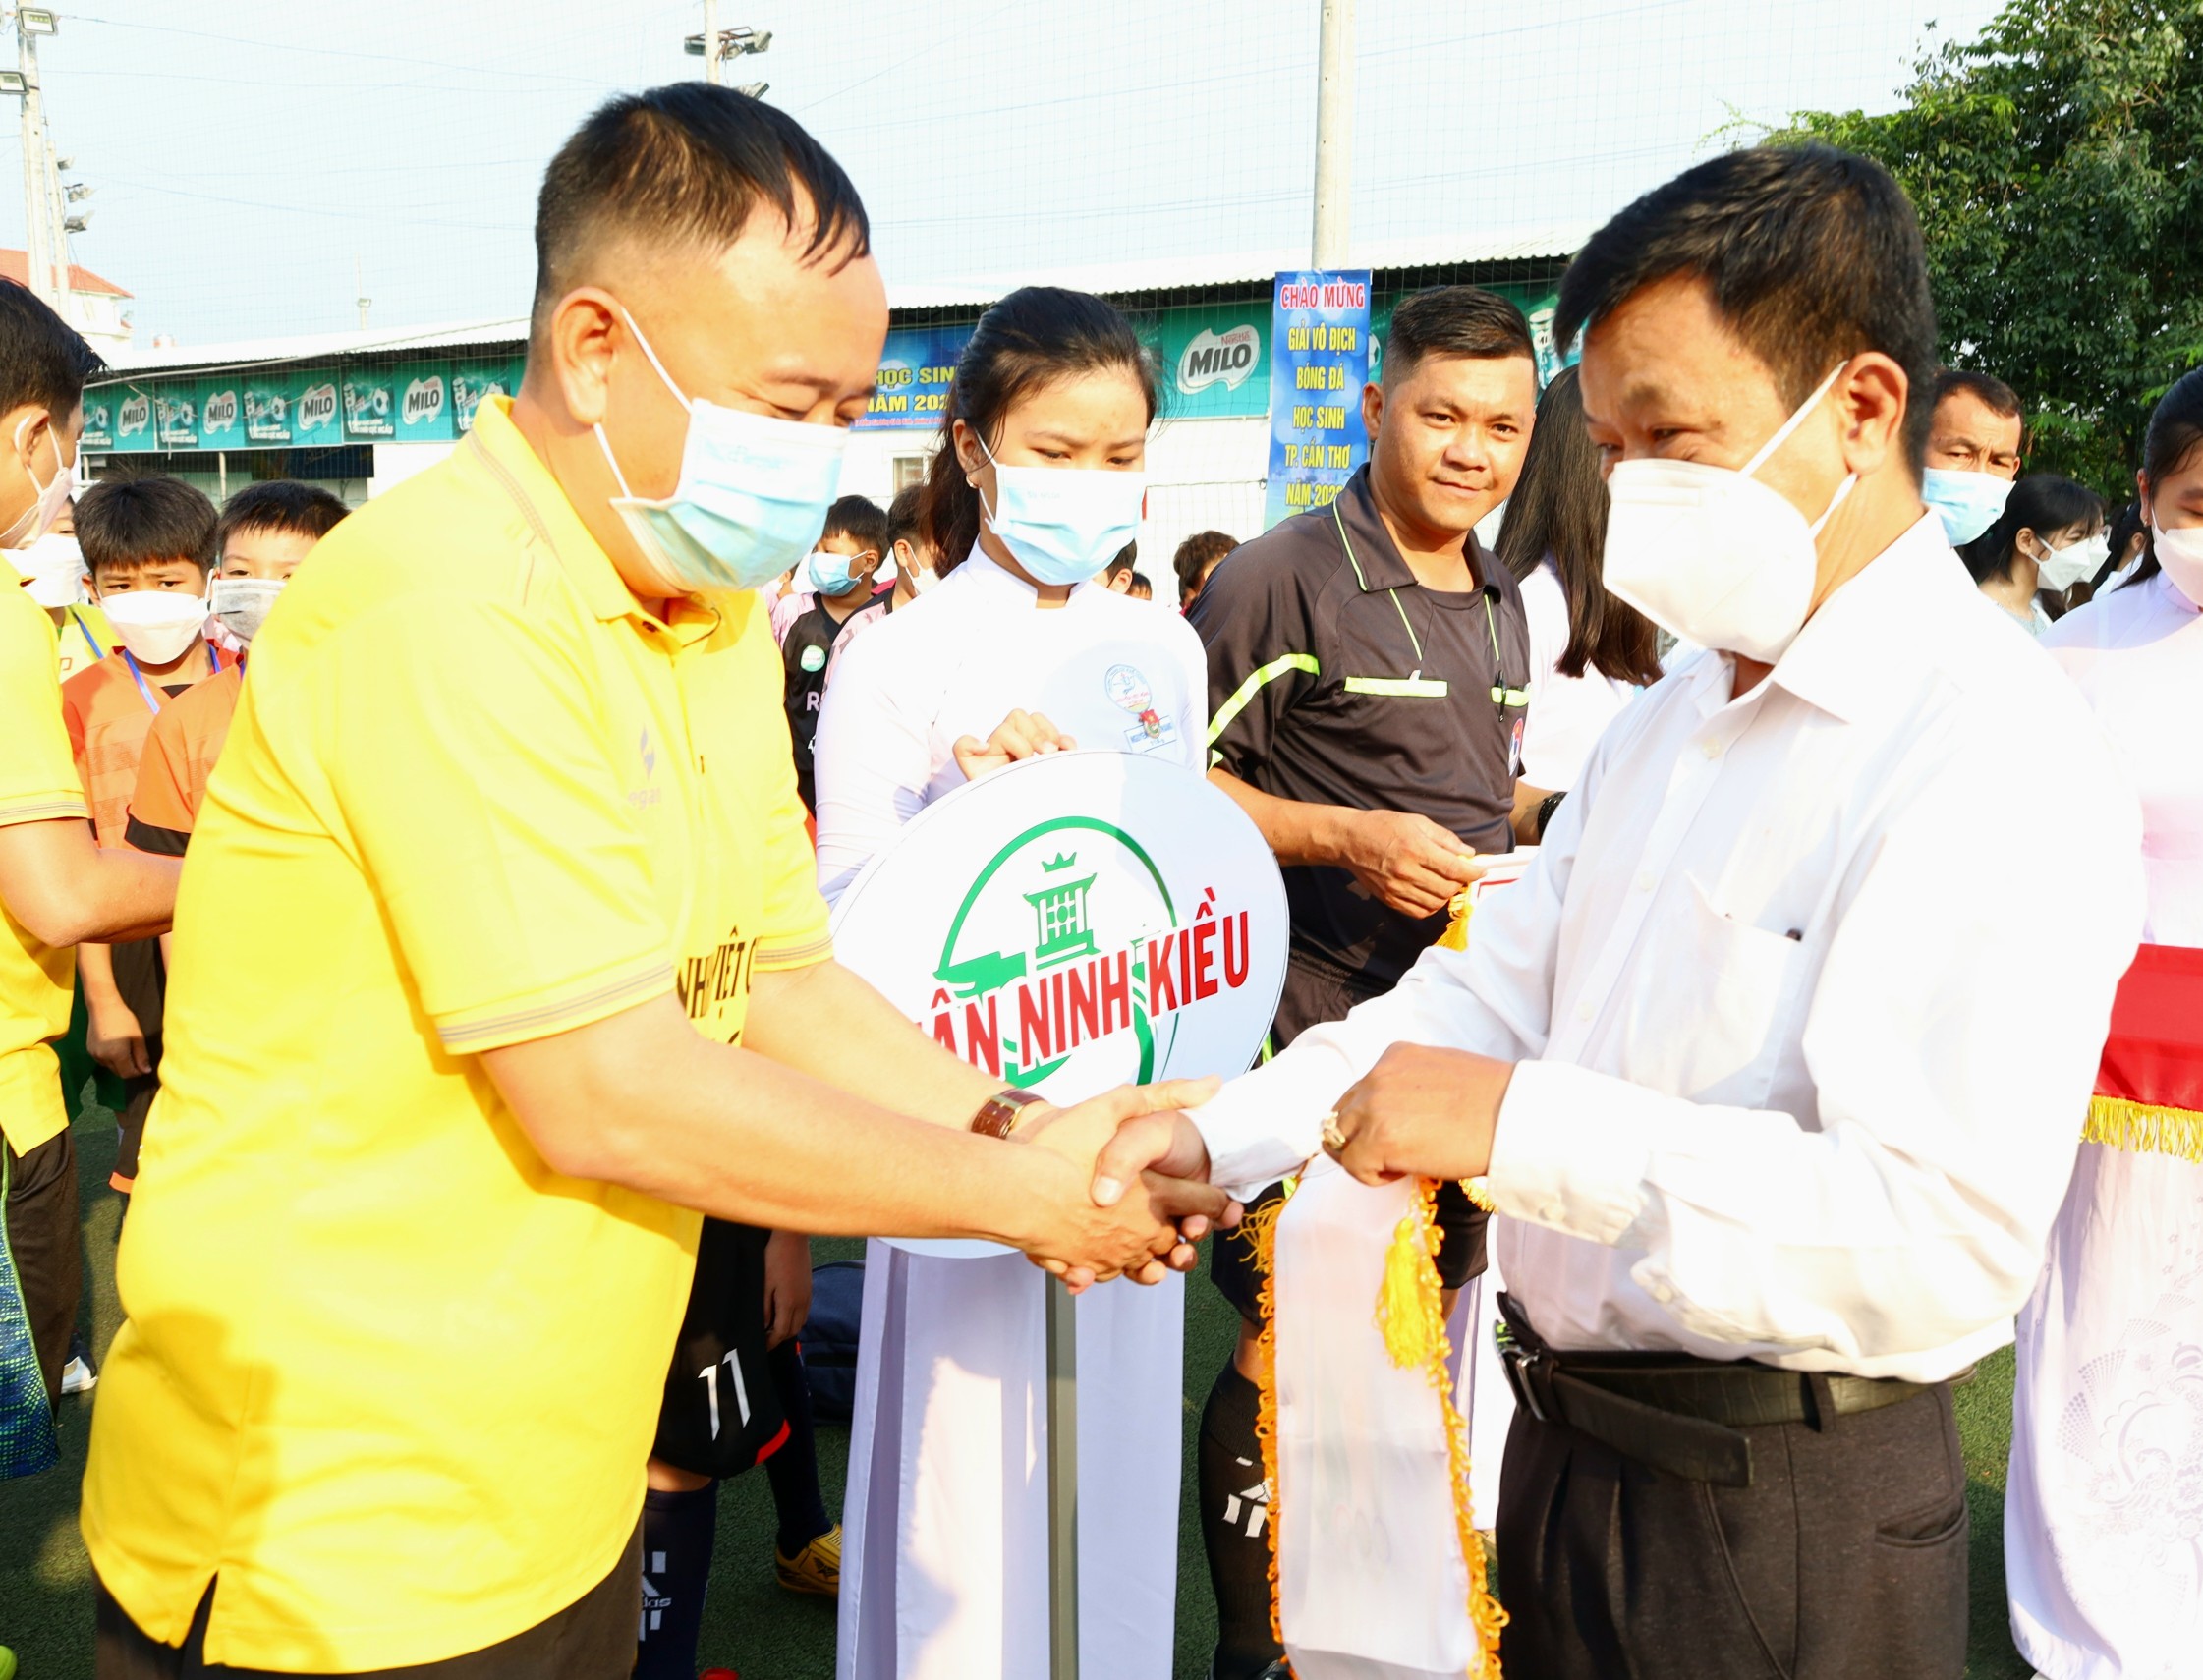 Ông Nguyễn Hữu Nhân - Trưởng Phòng Chính trị, tư tưởng - Sở Giáo dục và Đào tạo TP. Cần Thơ trao cờ lưu niệm cho các đơn vị tham dự giải.